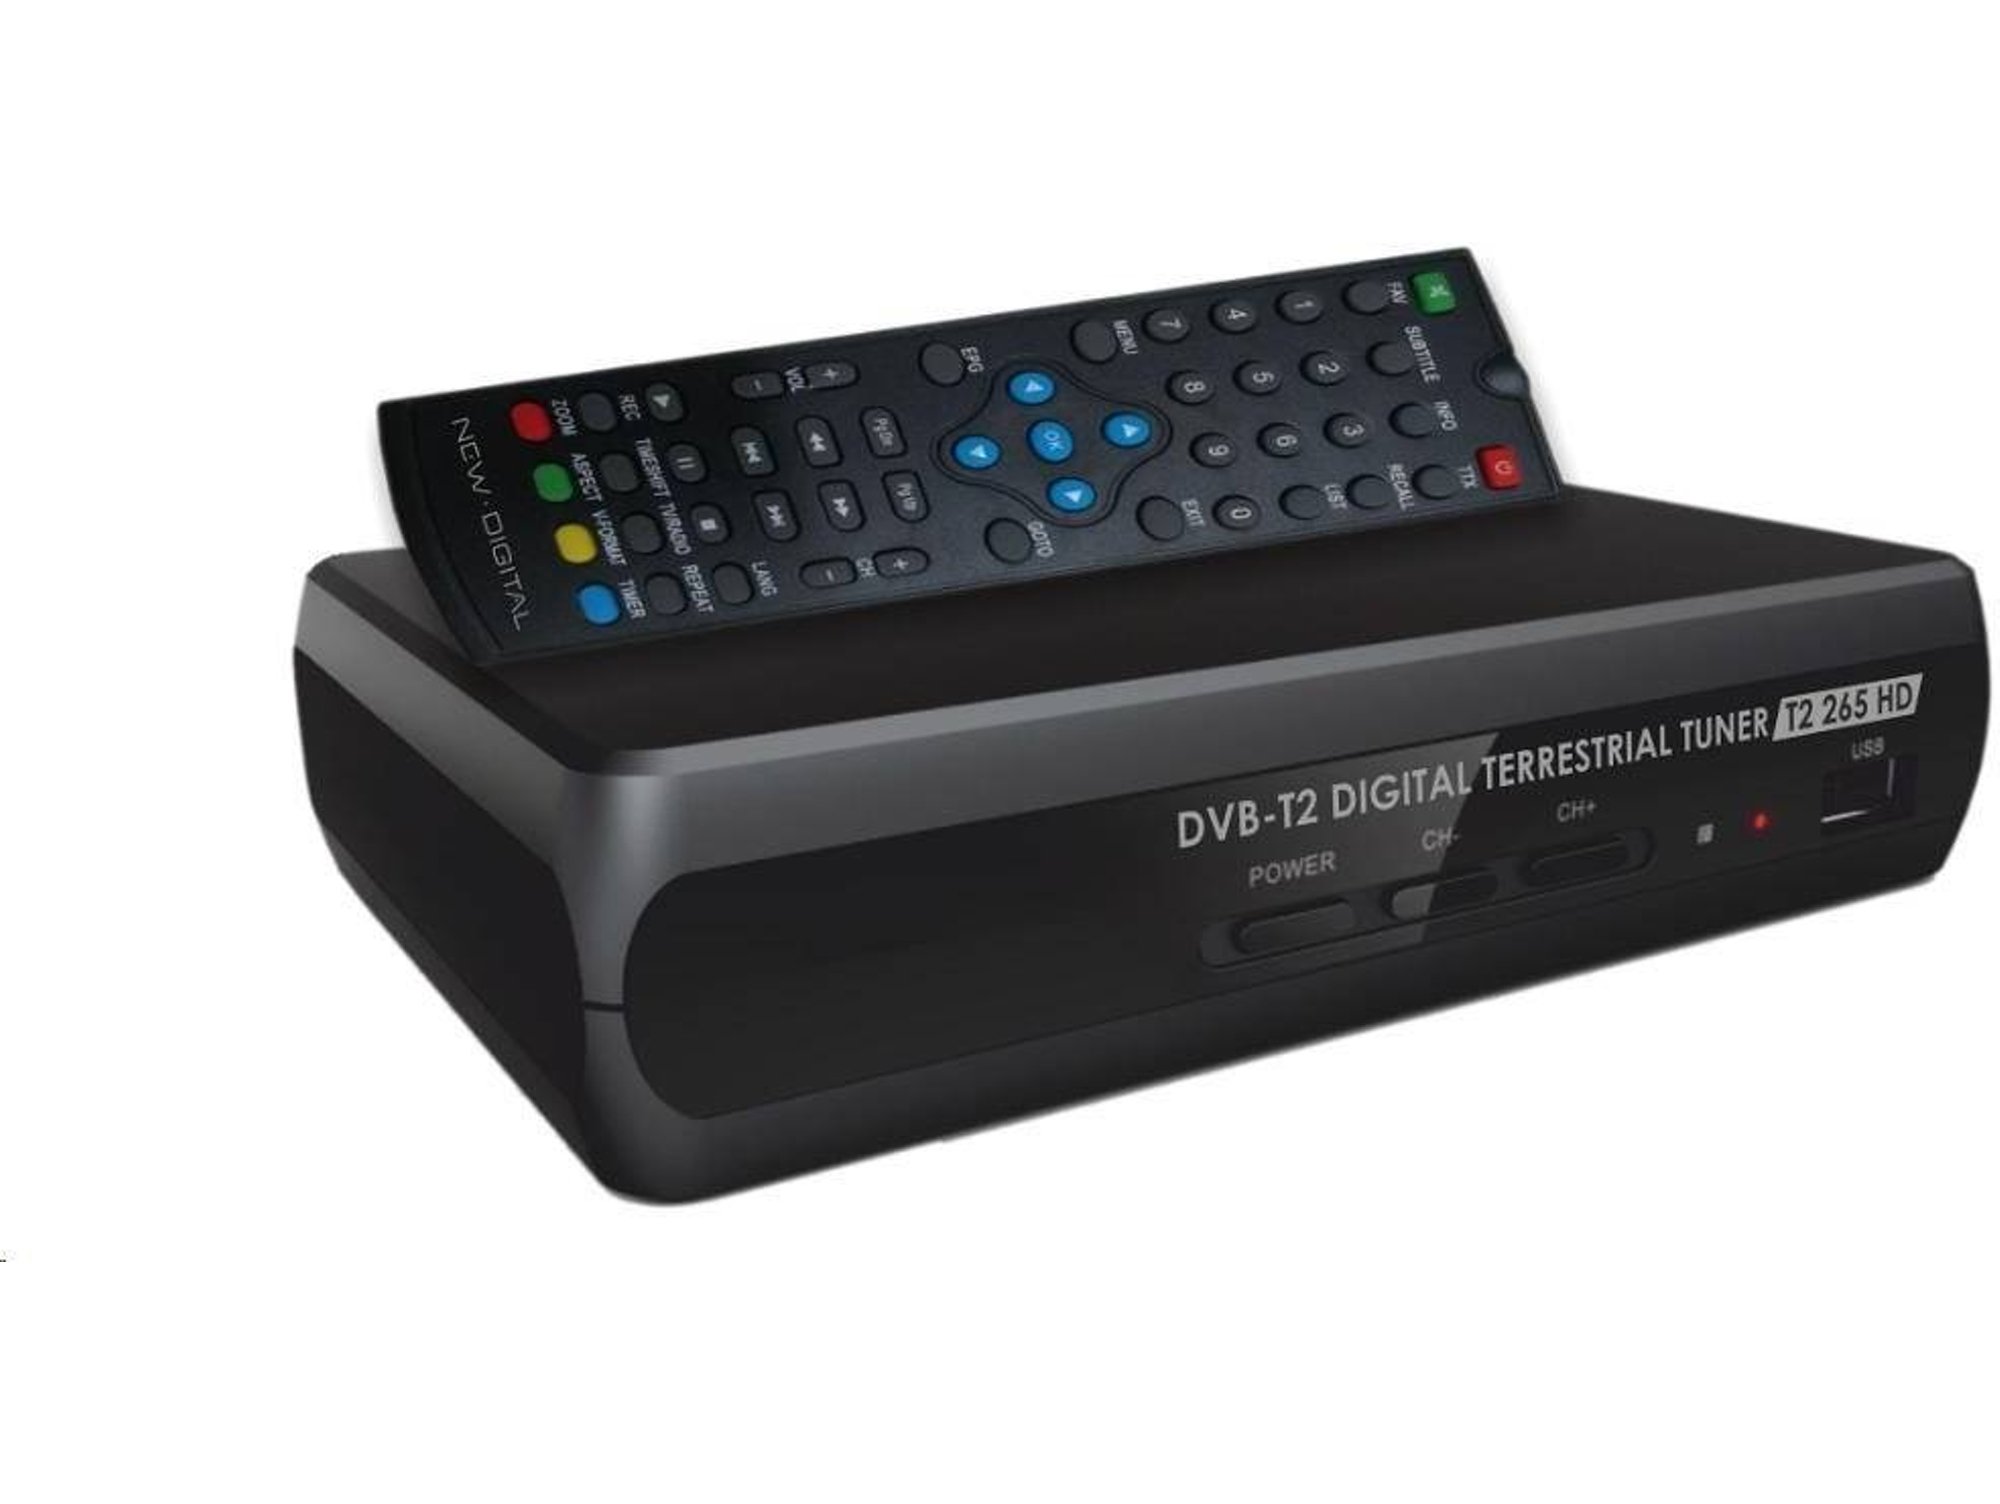 Receptor TDT NEW DIGITAL T2 265 HD DVB-T2